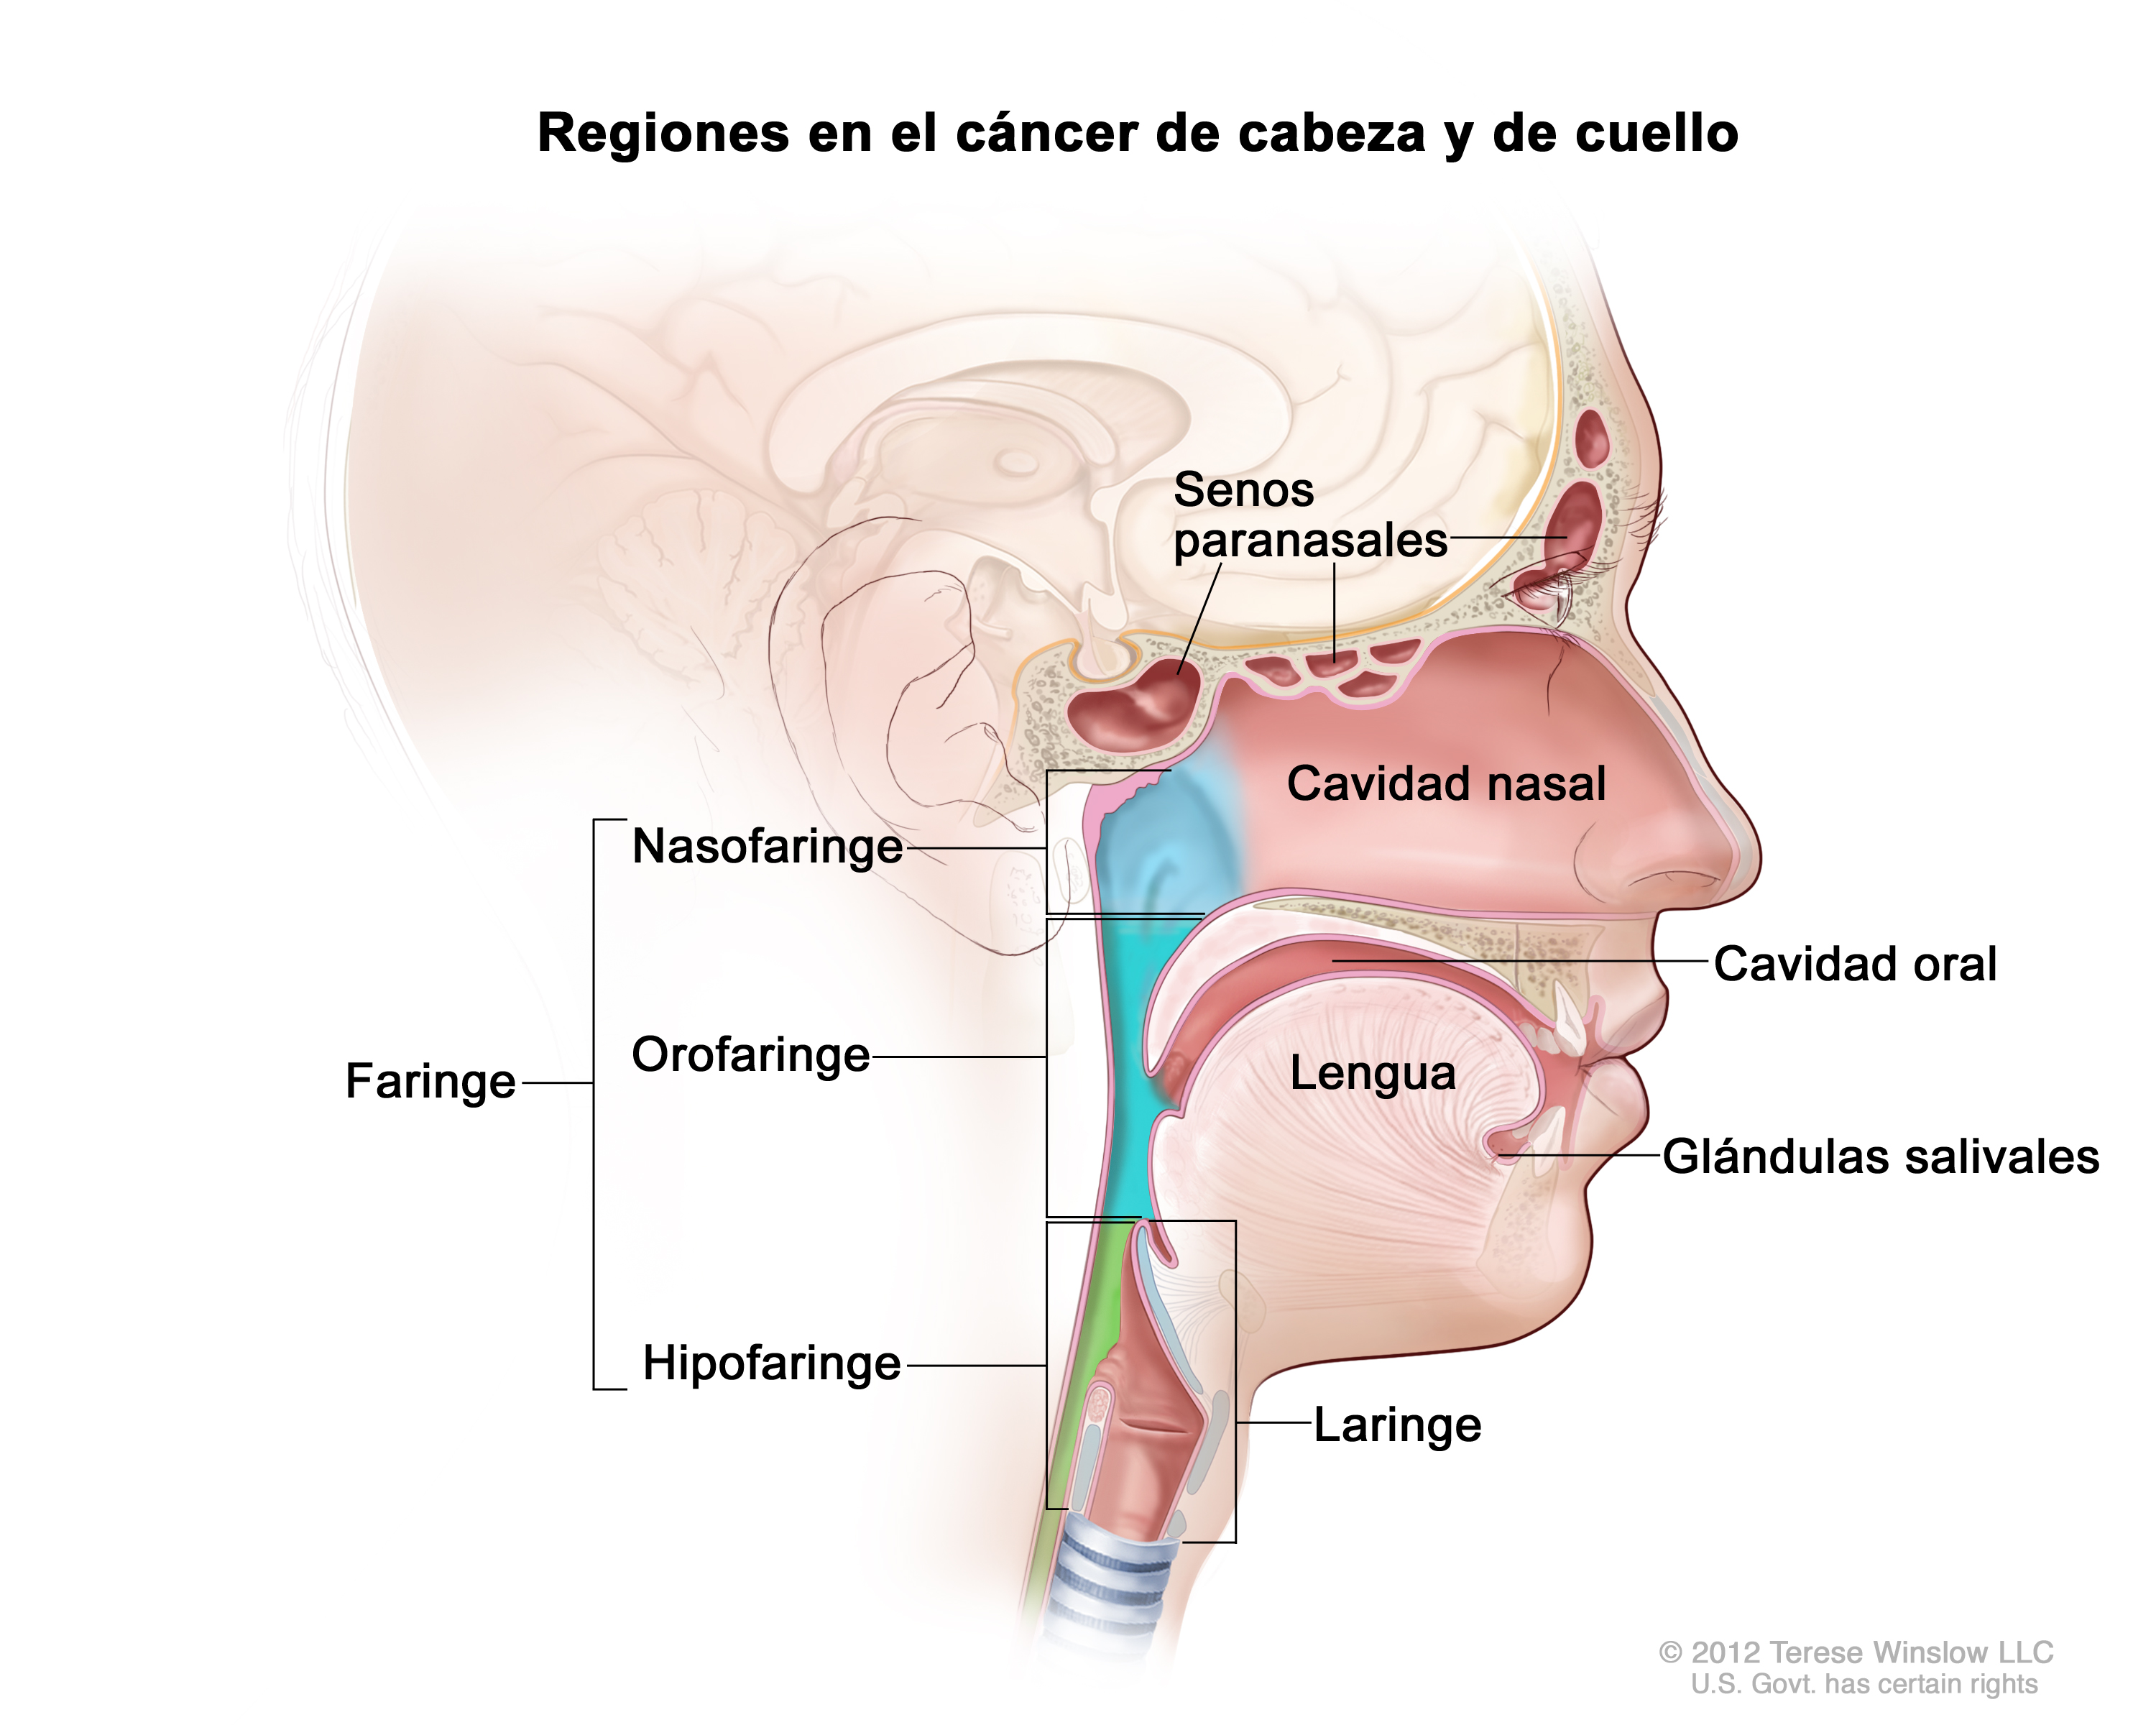 Se estima que, del total de diagnósticos de cáncer de cabeza y cuello, 4 de cada 10 corresponden a la boca, 1 de cada 3 se sitúa en la laringe y el 23% restante en la faringe (imagen: National Cancer Institute)